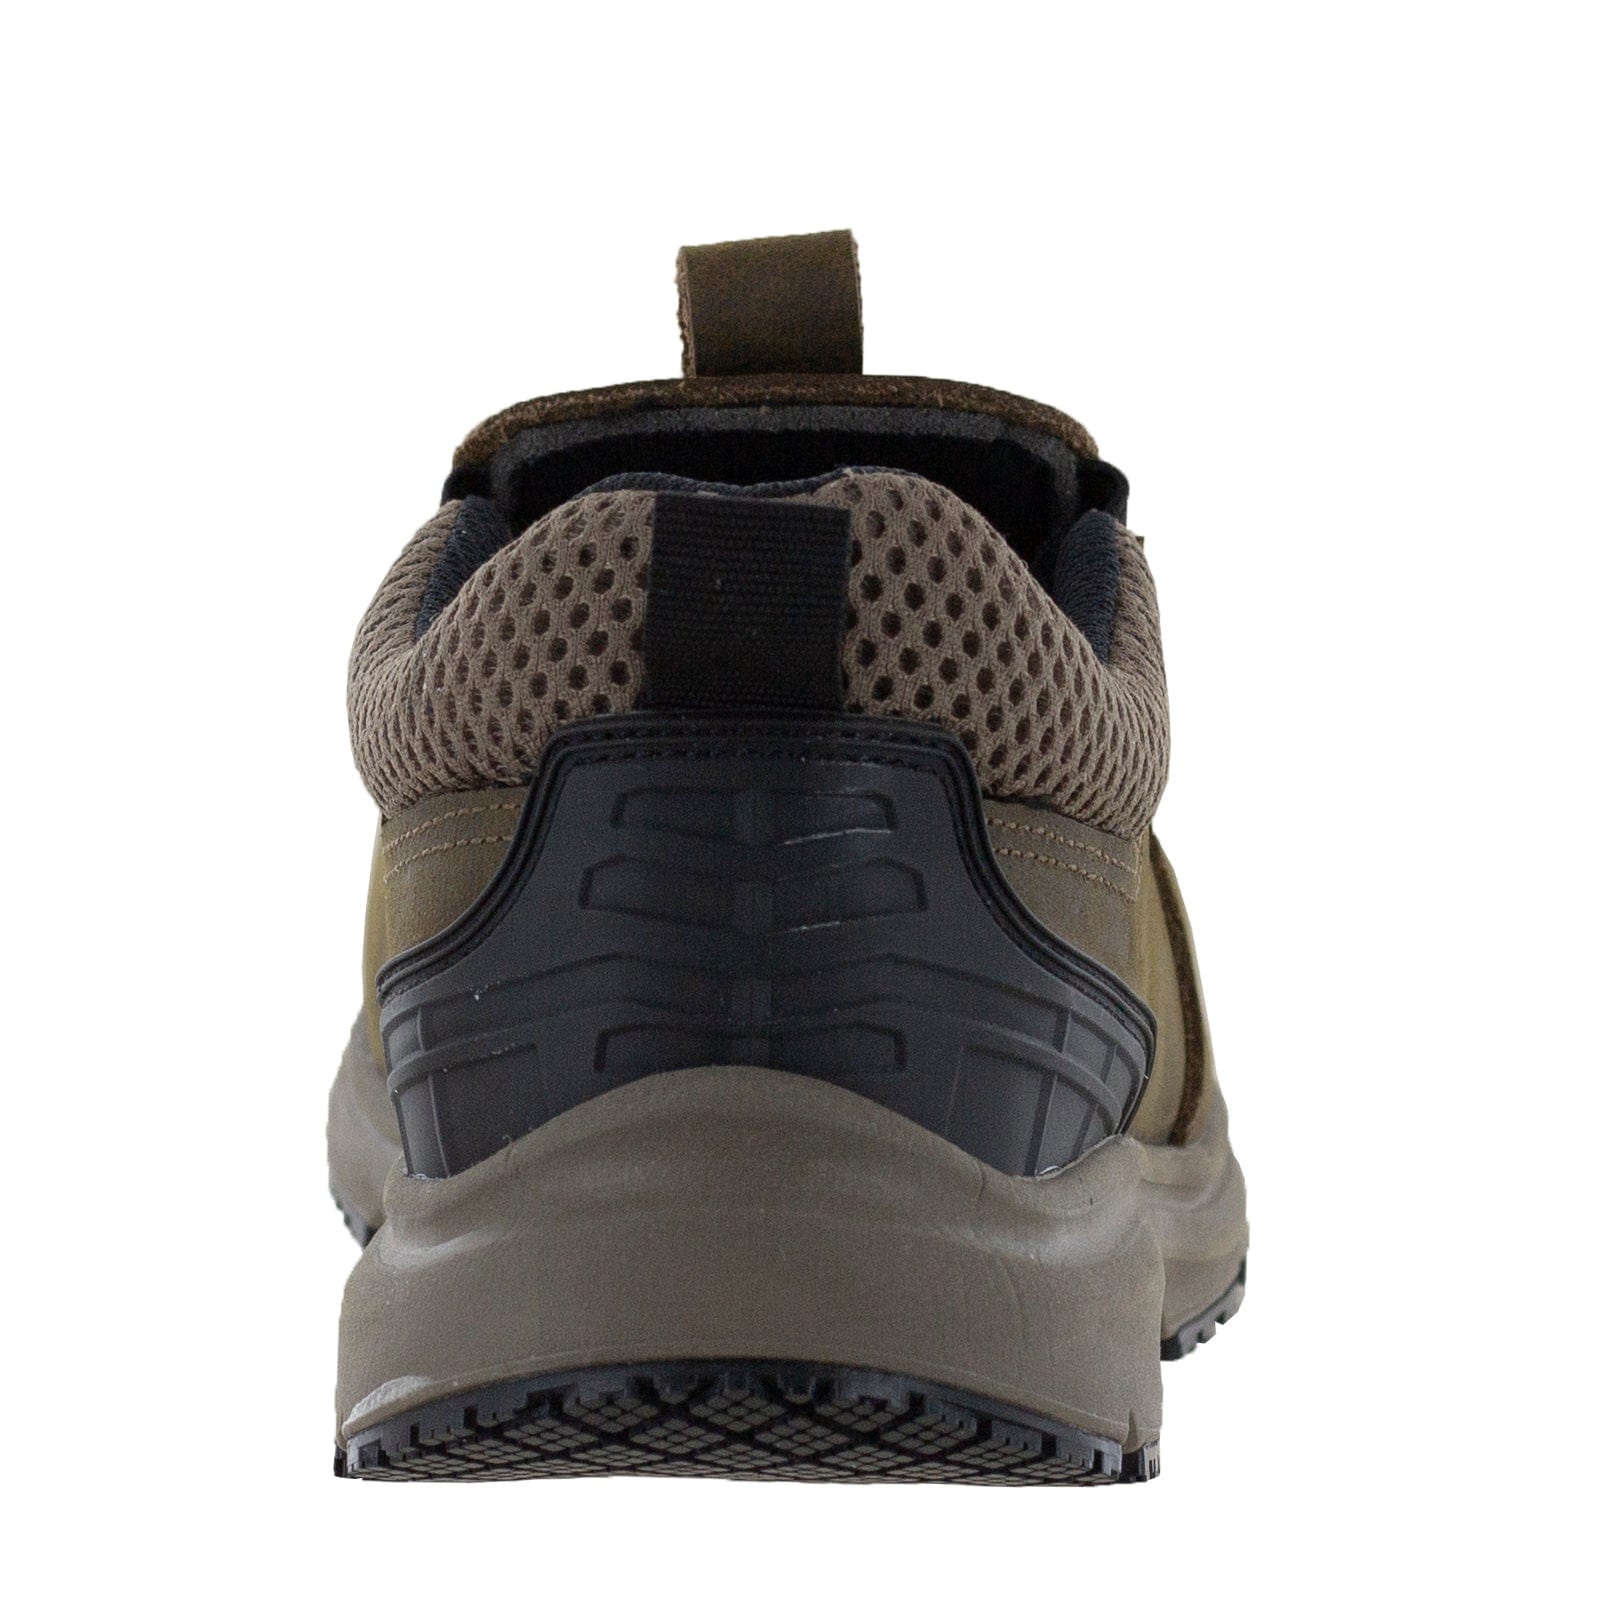 Non-slip slip-on carbon fiber toe work shoes for men